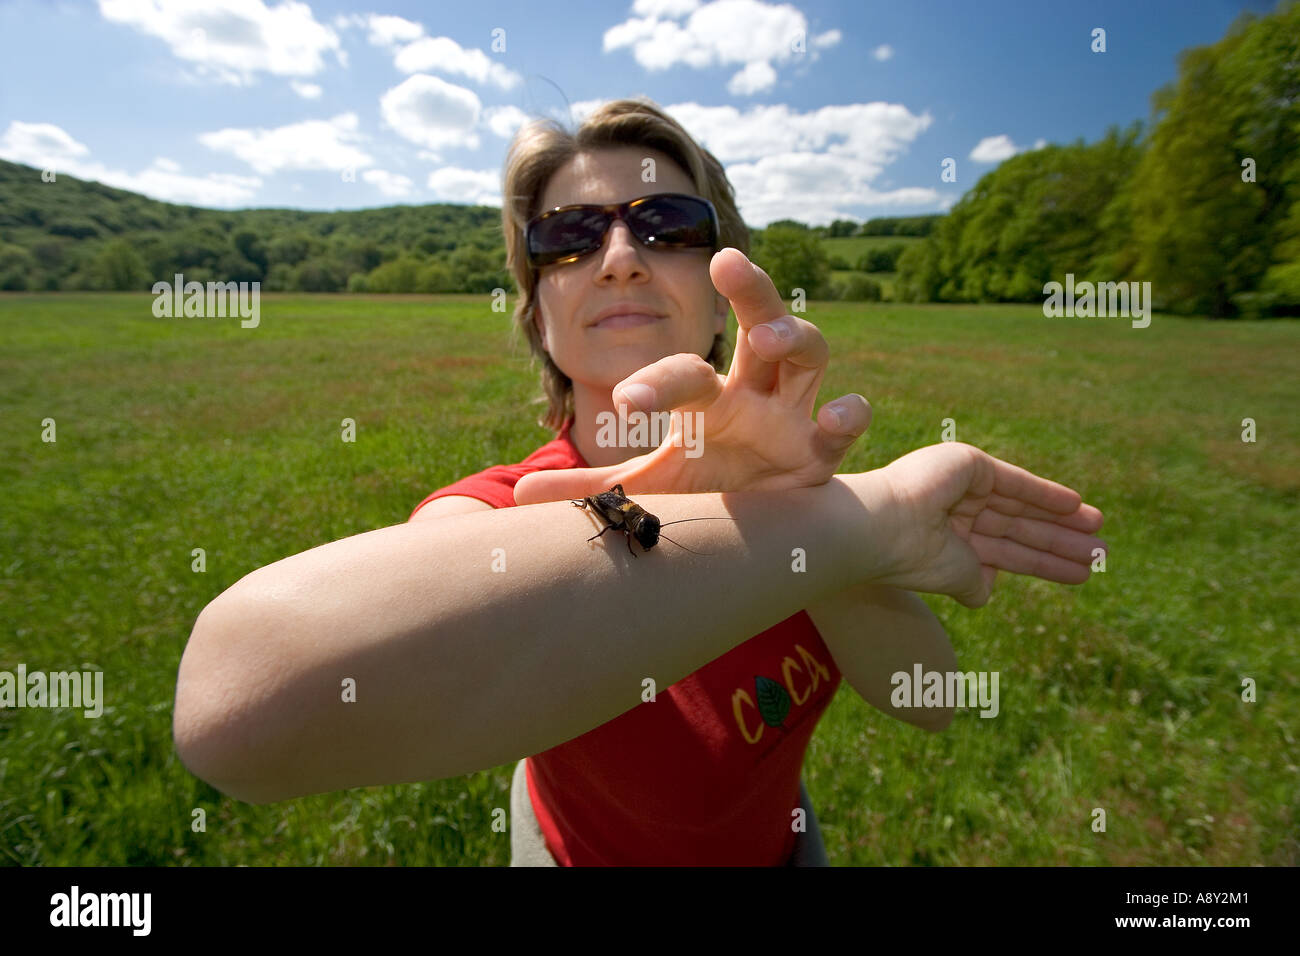 Young Lady presenting a cricket (Gryllus campestris) on her forearm. Jeune femme présentant un grillon sur son avant- bras. Stock Photo